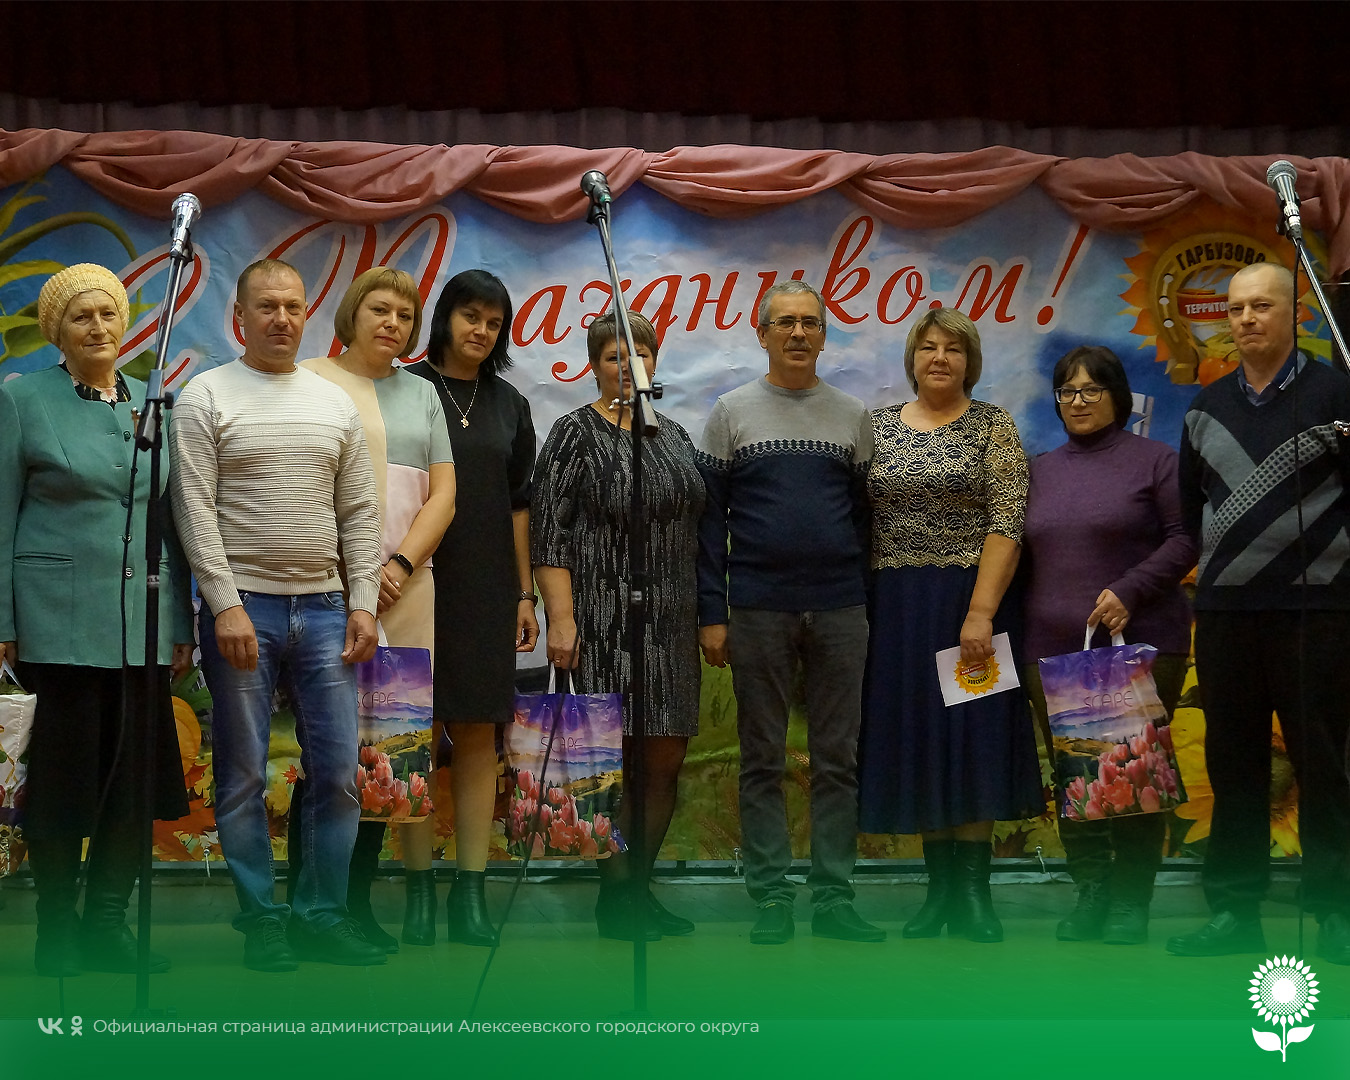 В минувшие выходные в селе Гарбузово пришёл праздник села «И нет в целом мире прекрасней!».